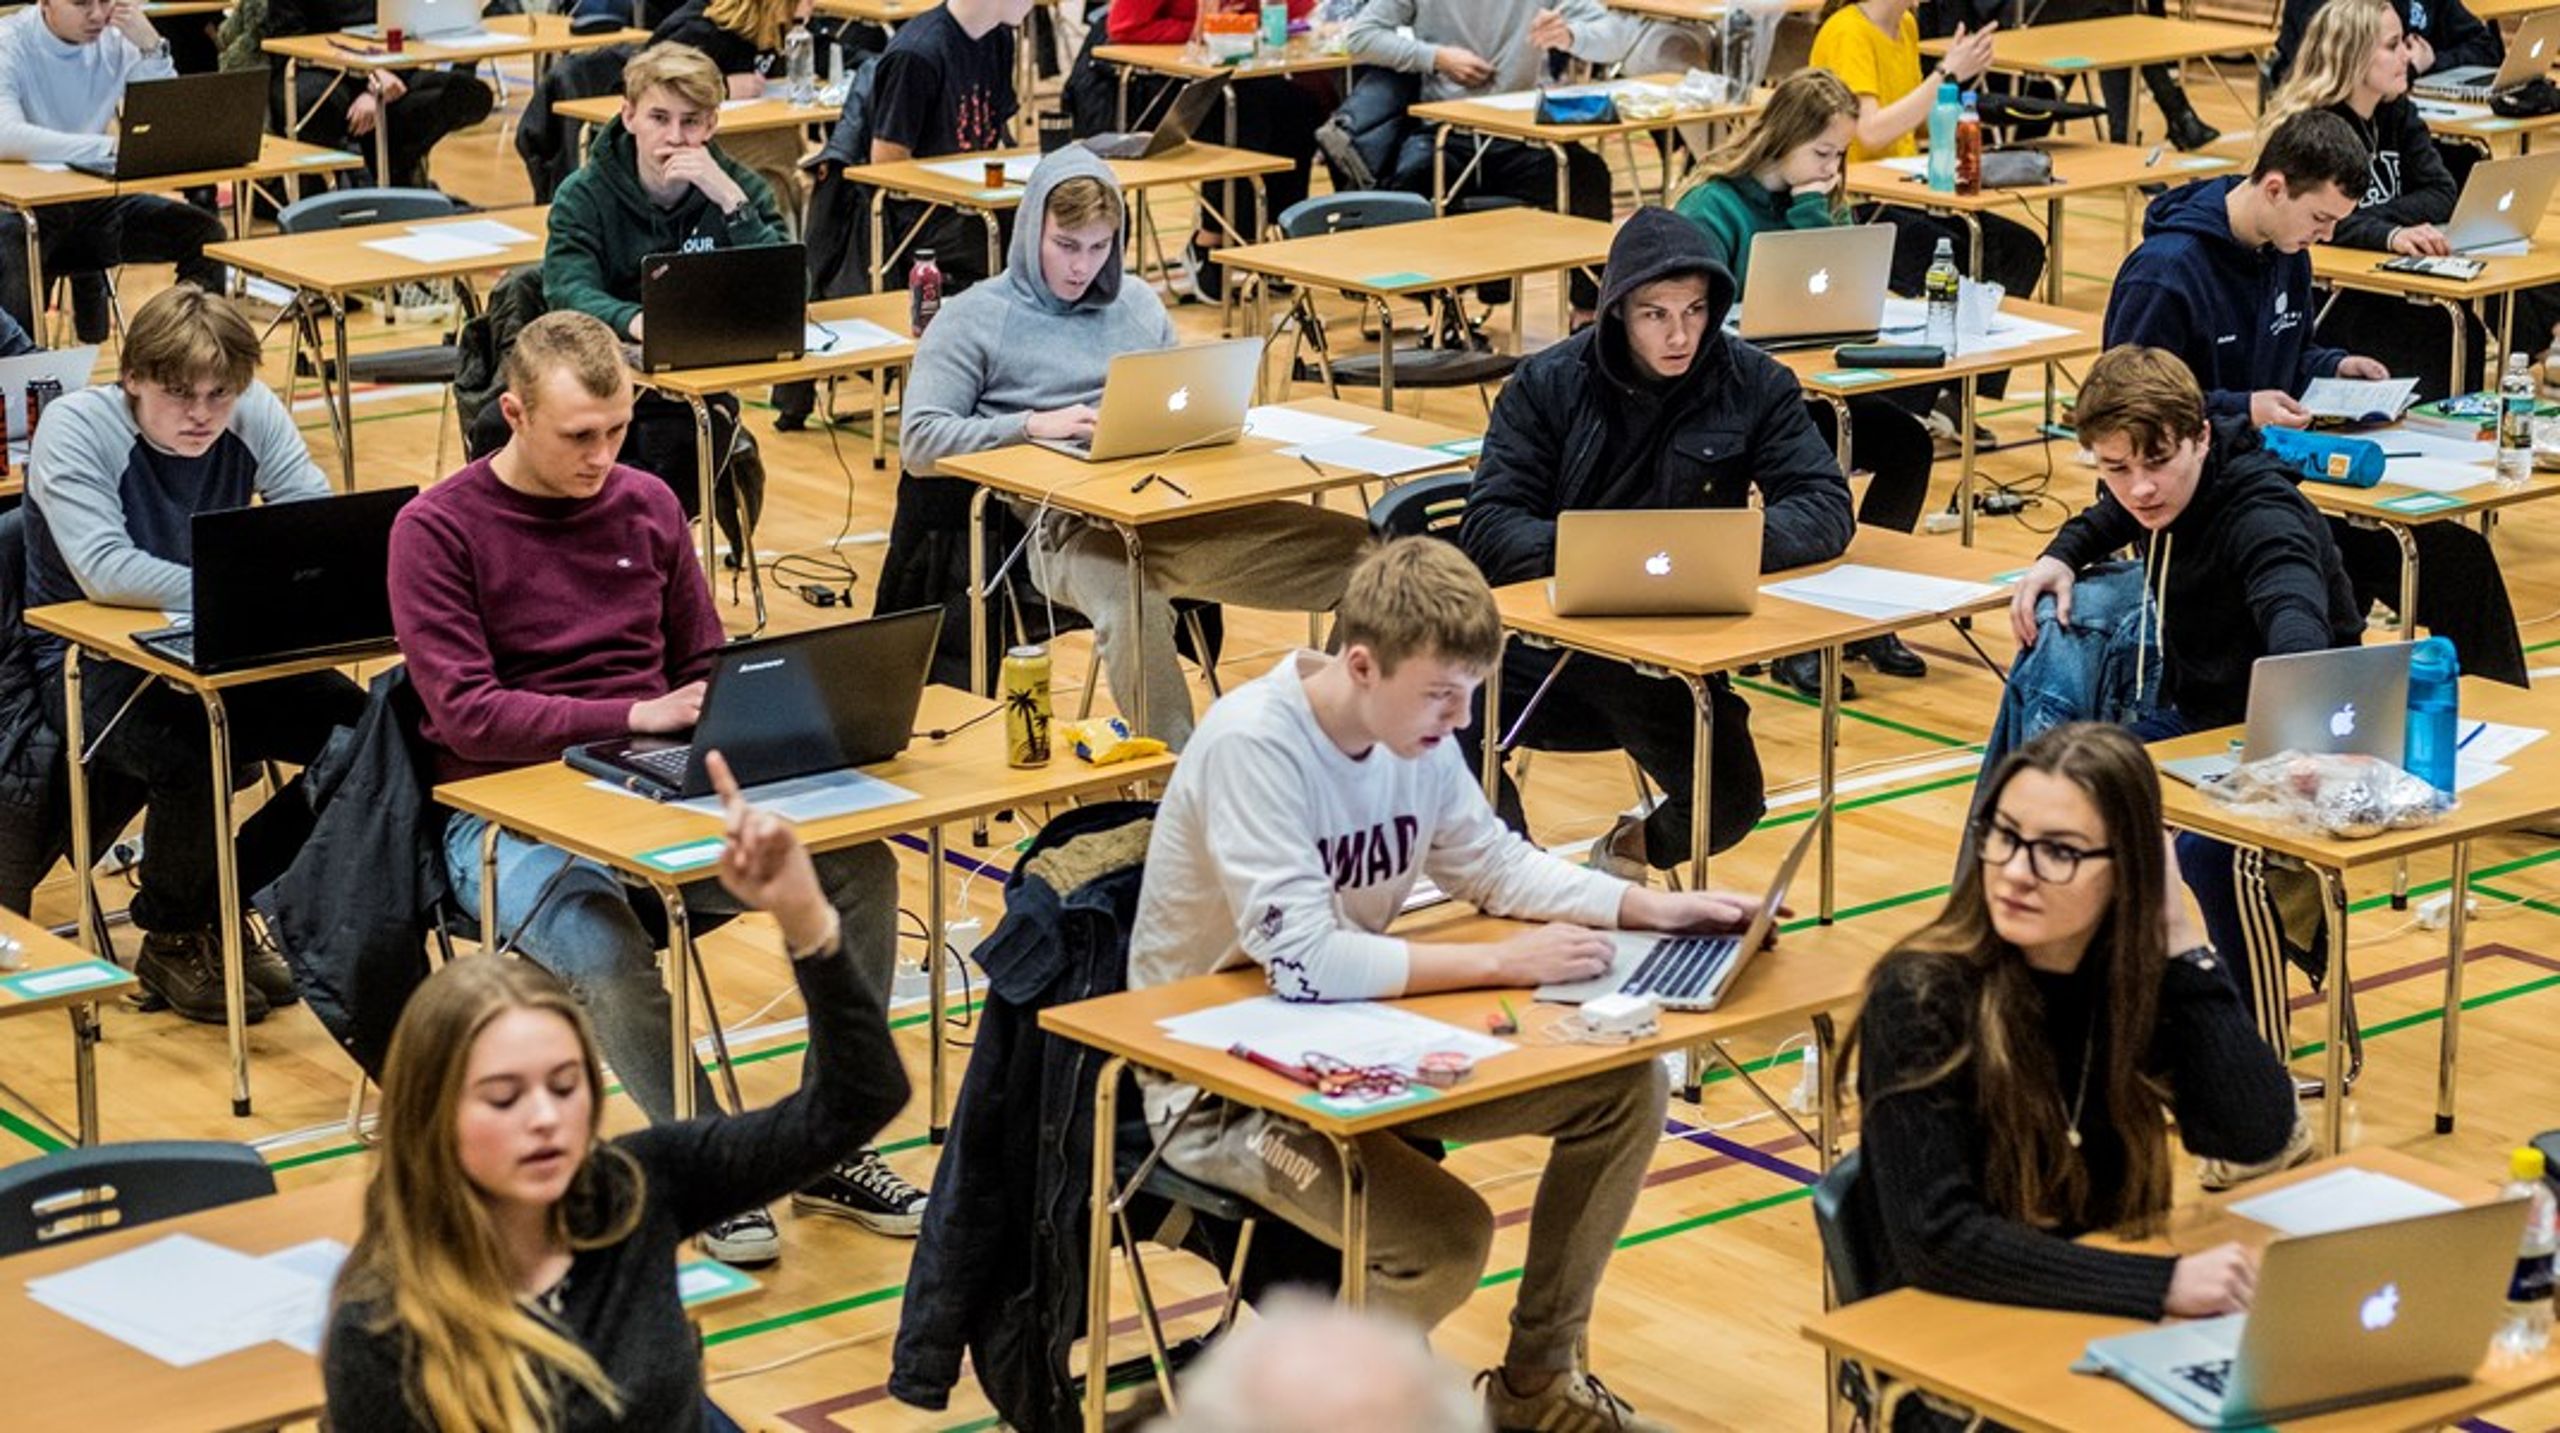 Socialdemokraternes ide om at tvangsfordele elever er lodret forkert og vil ikke øge integrationen, skriver Rasmus Ulstrup Larsen.&nbsp;